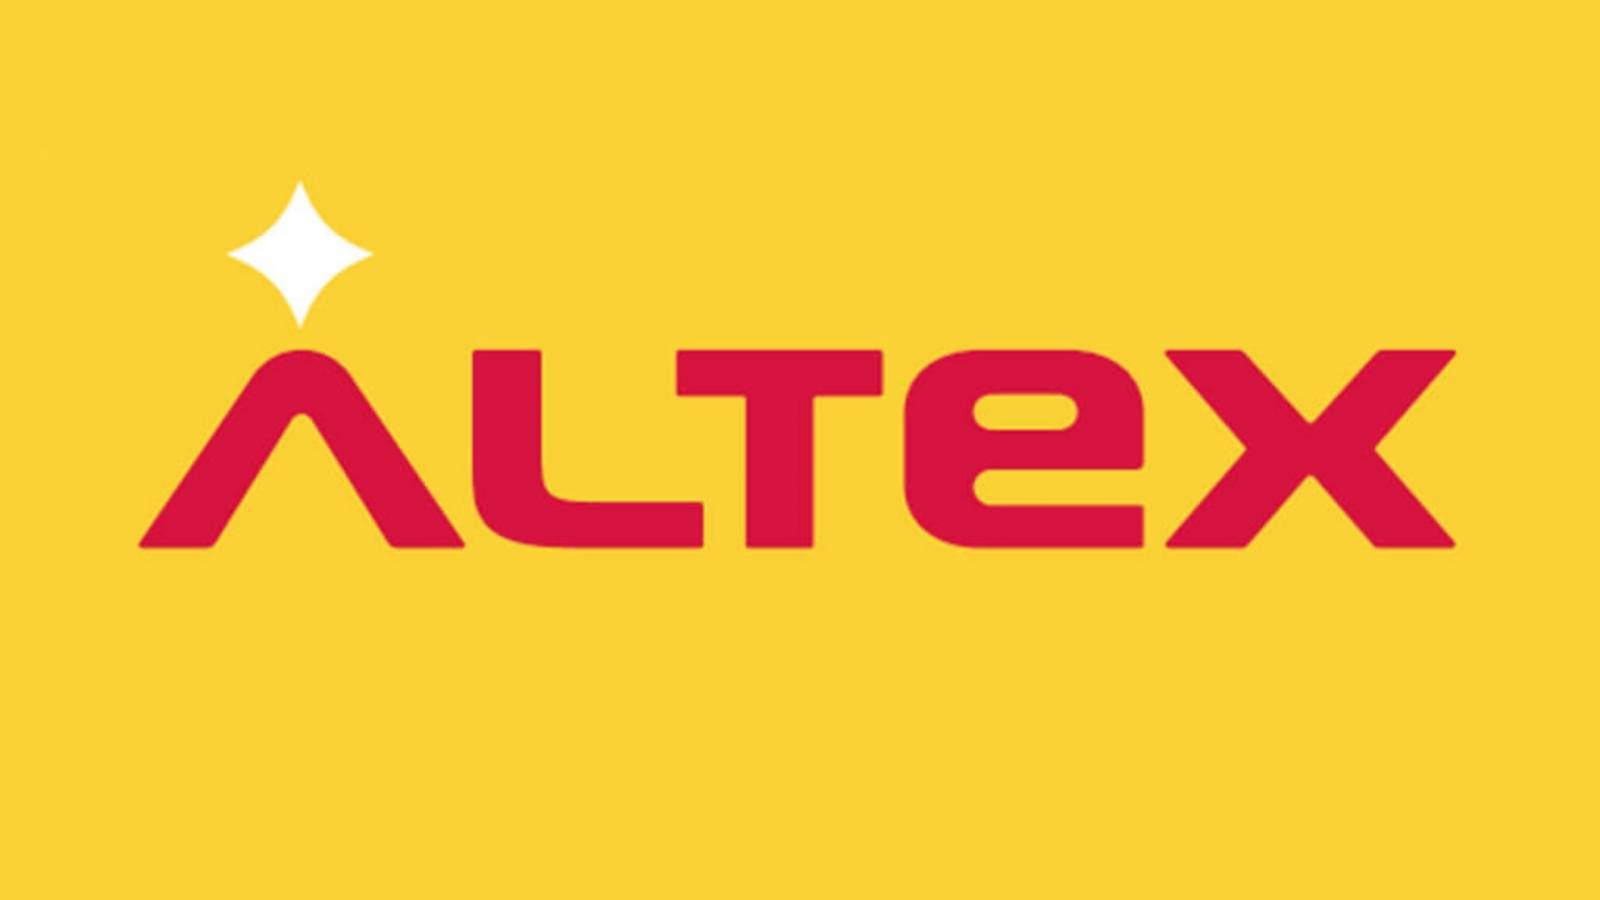 ALTEX-varning